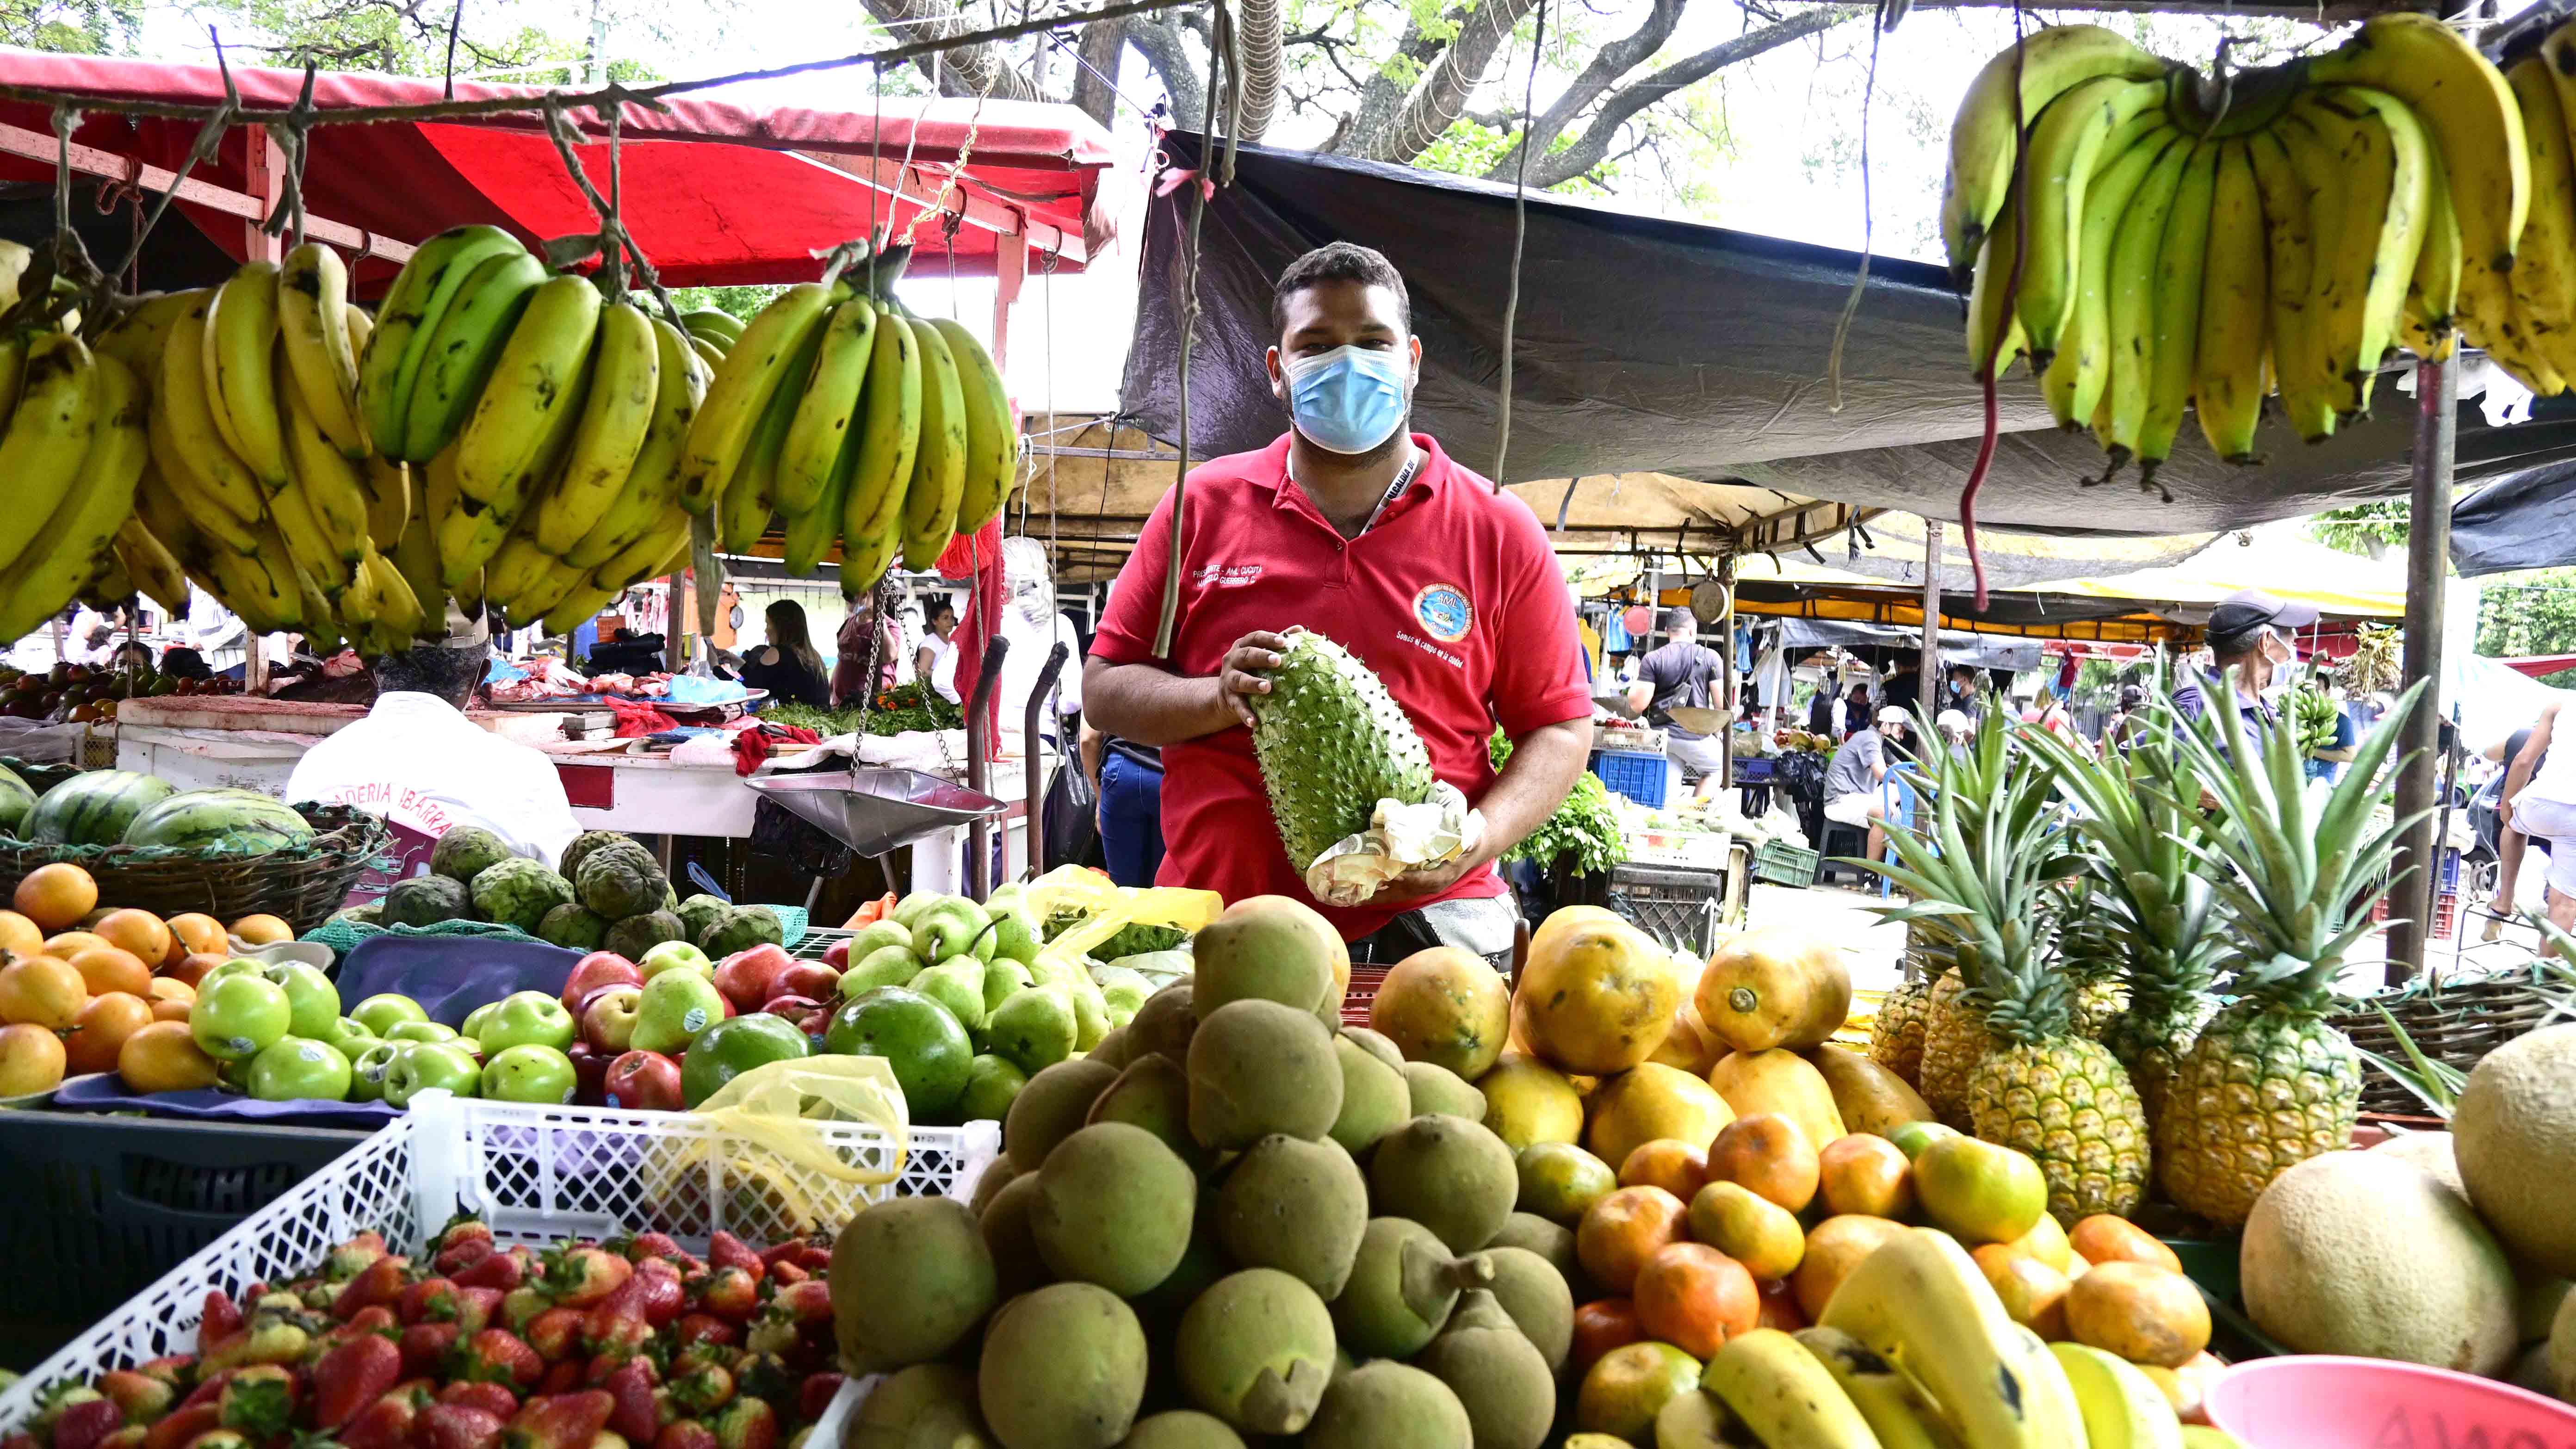 El mercado libre de Cúcuta, 64 años al servicio de la ciudad. Foto: Jorge Gutiérrez